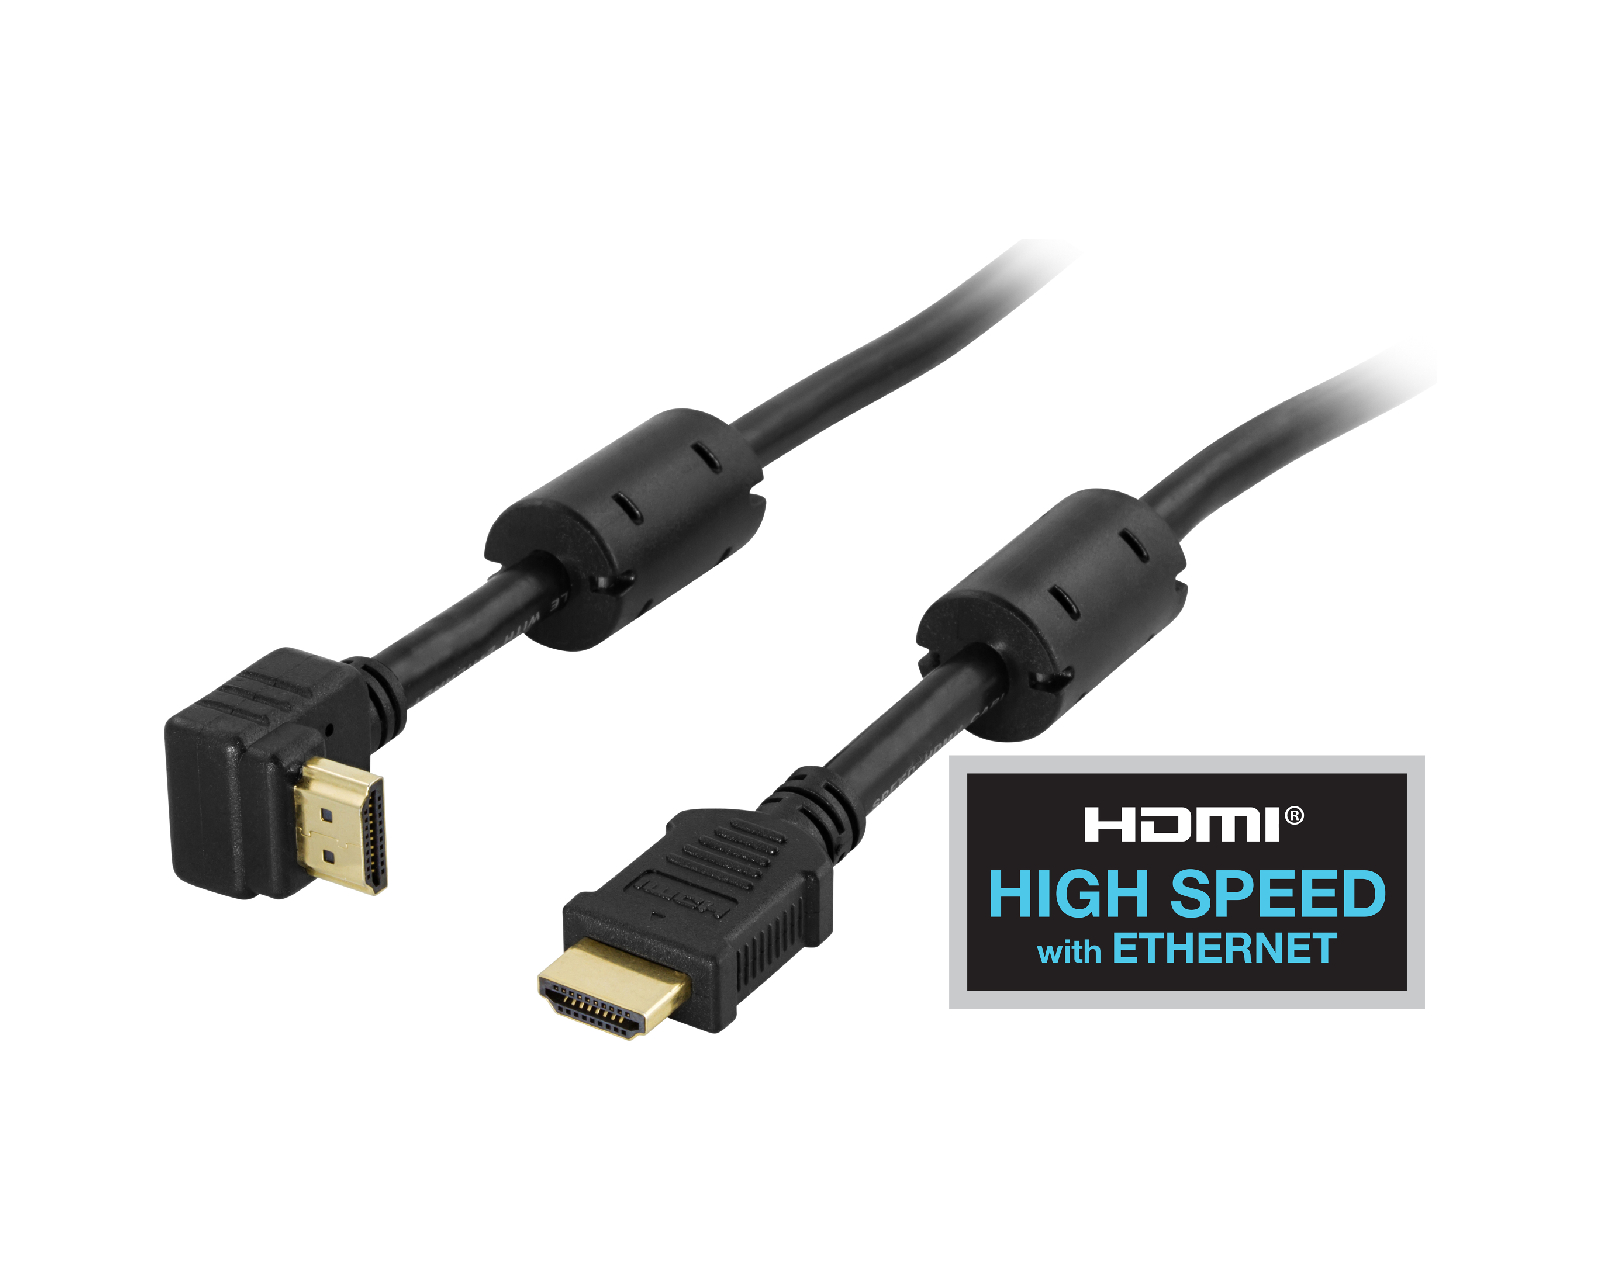 sagde Logisk Hong Kong Deltaco Vinklet HDMI Kabel High Speed with Ethernet, 4K, Ultra HD in 60Hz -  Sort - 1.5m - MaxGaming.dk